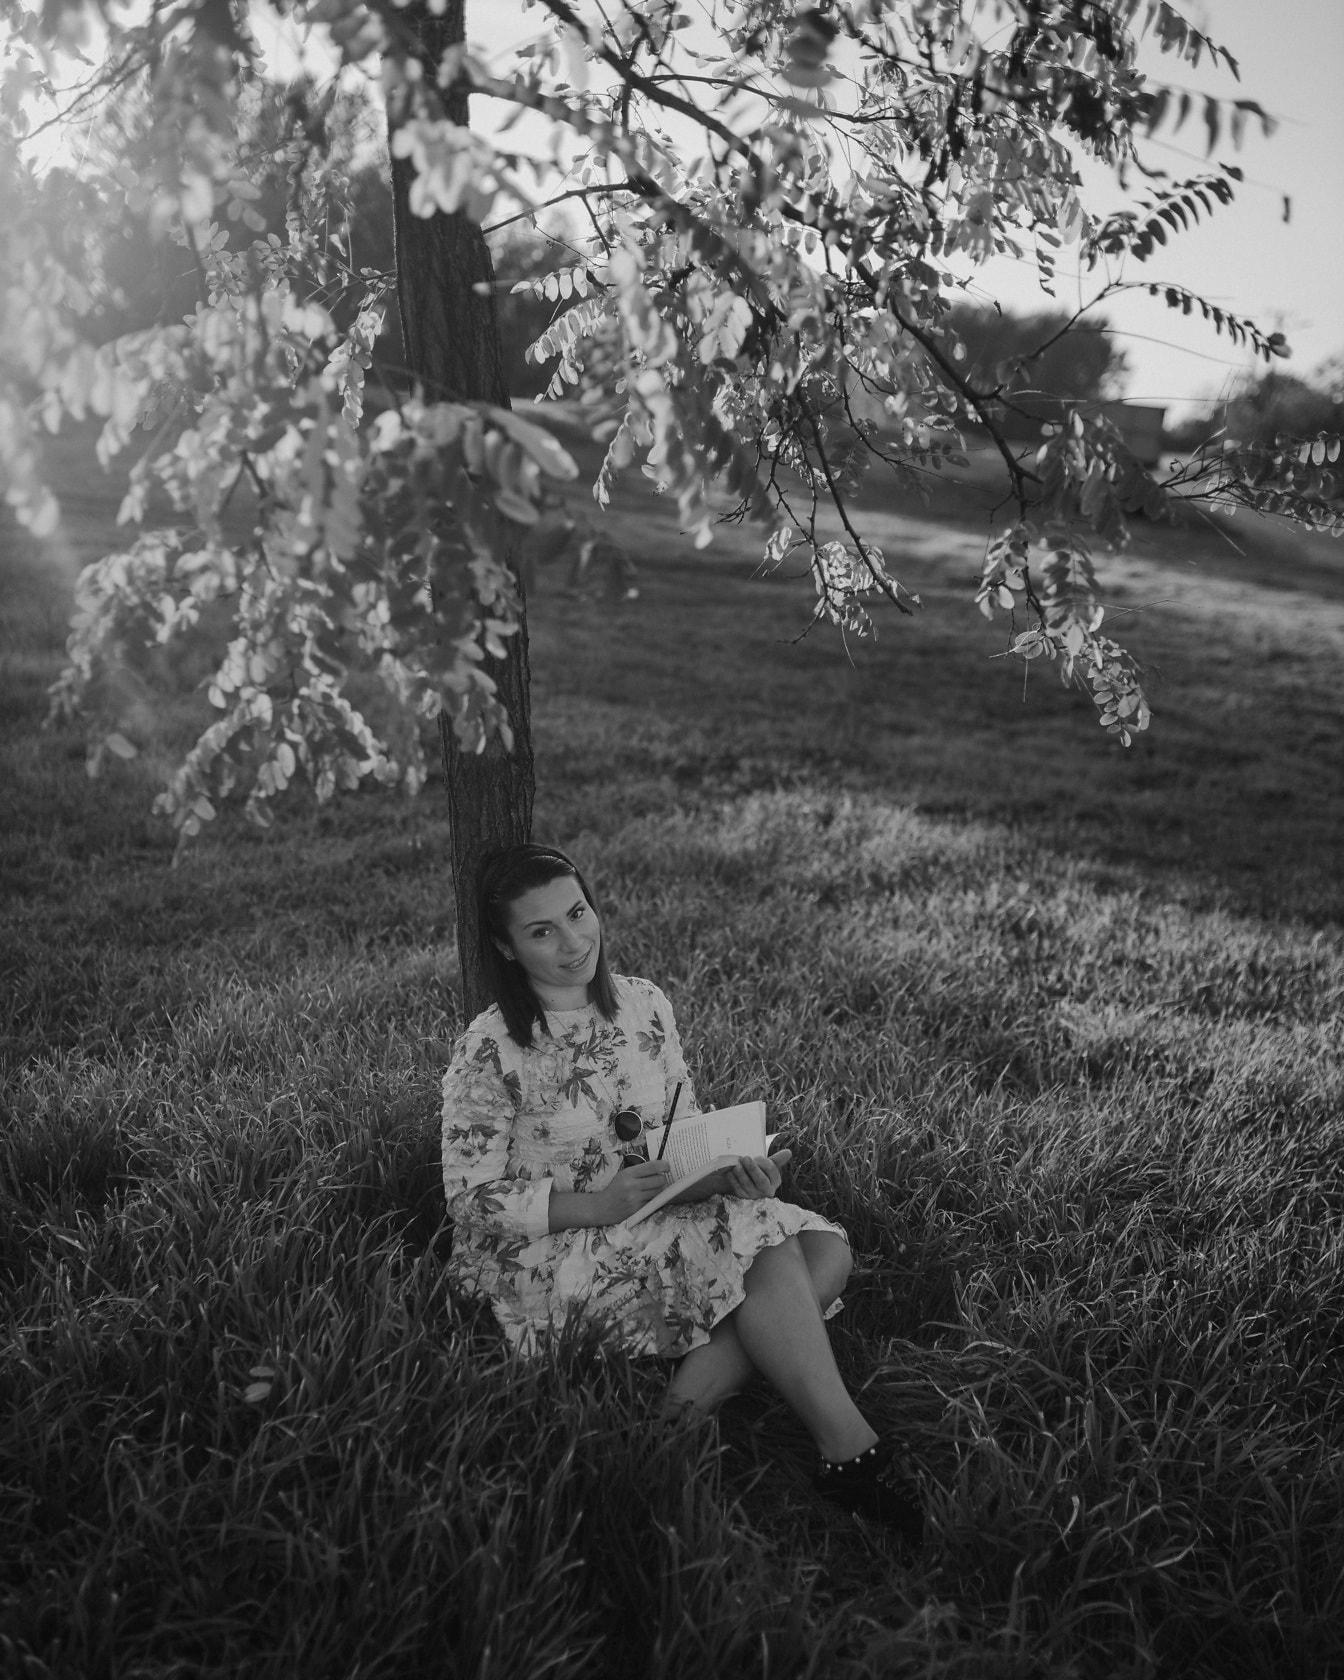 Gadis duduk di bawah pohon dan membaca buku foto monokrom